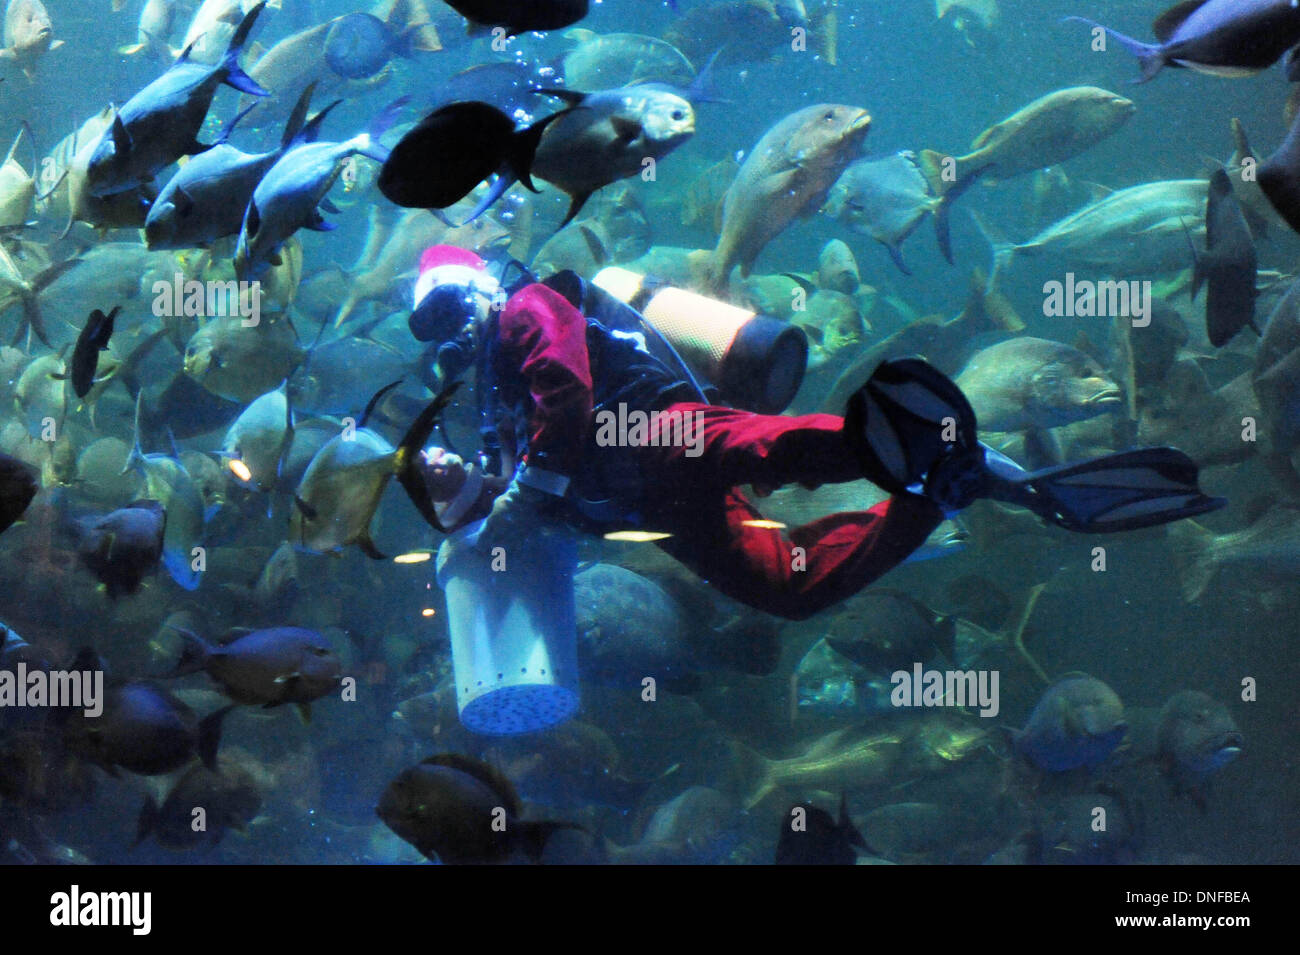 Fish costume immagini e fotografie stock ad alta risoluzione - Alamy